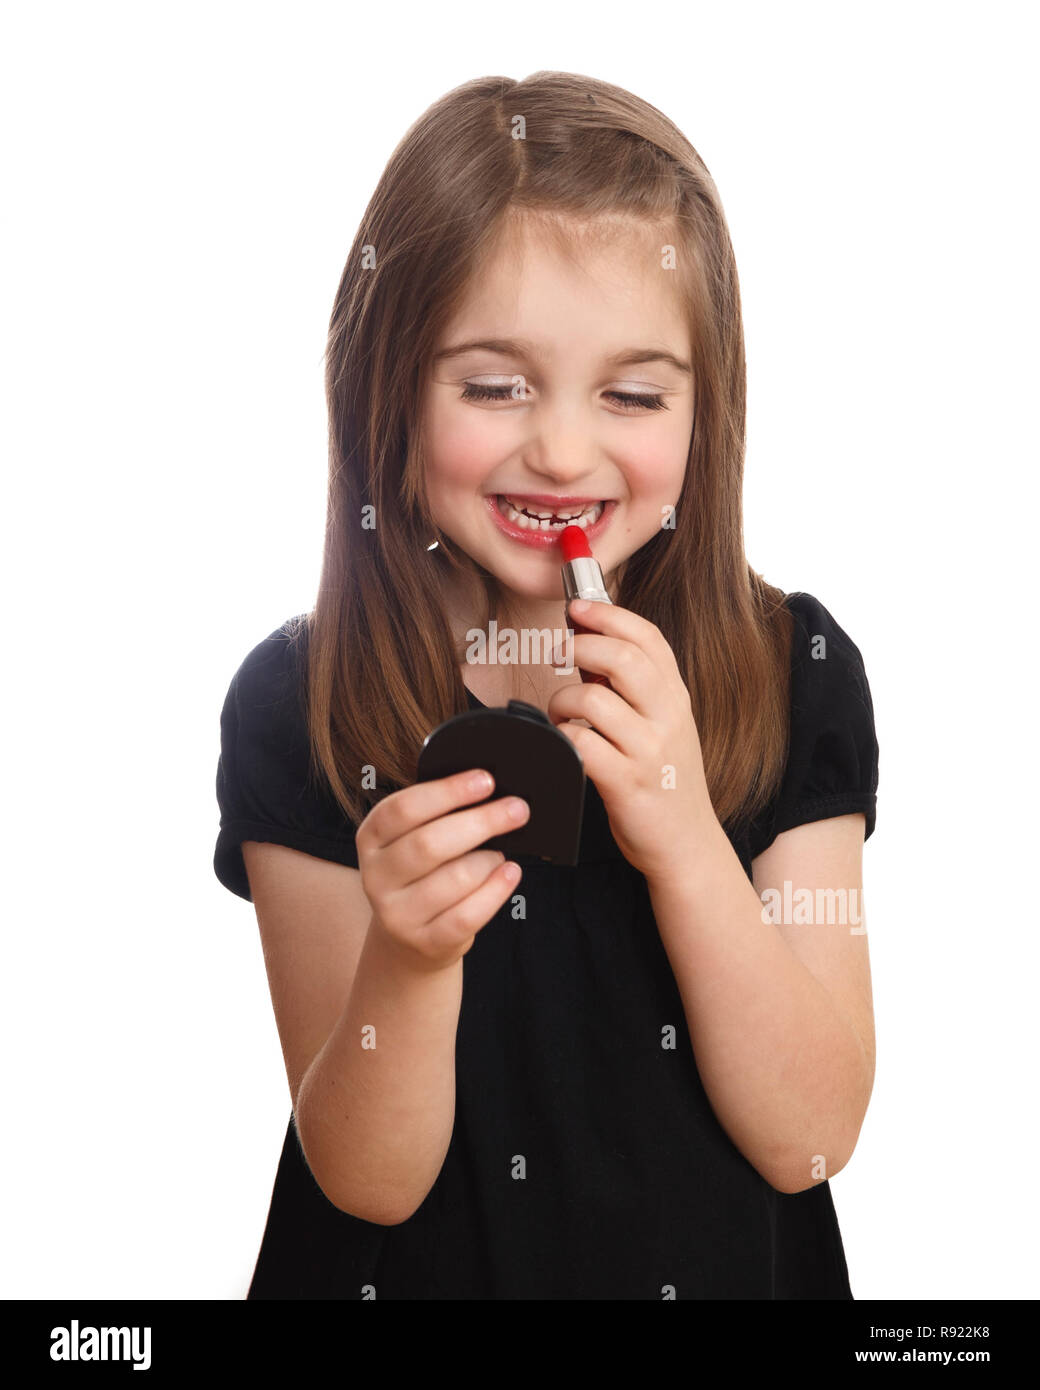 Nette junge Mädchen auf der Suche nach kompakten Spiegel setzen auf roten Lippenstift Stockfoto